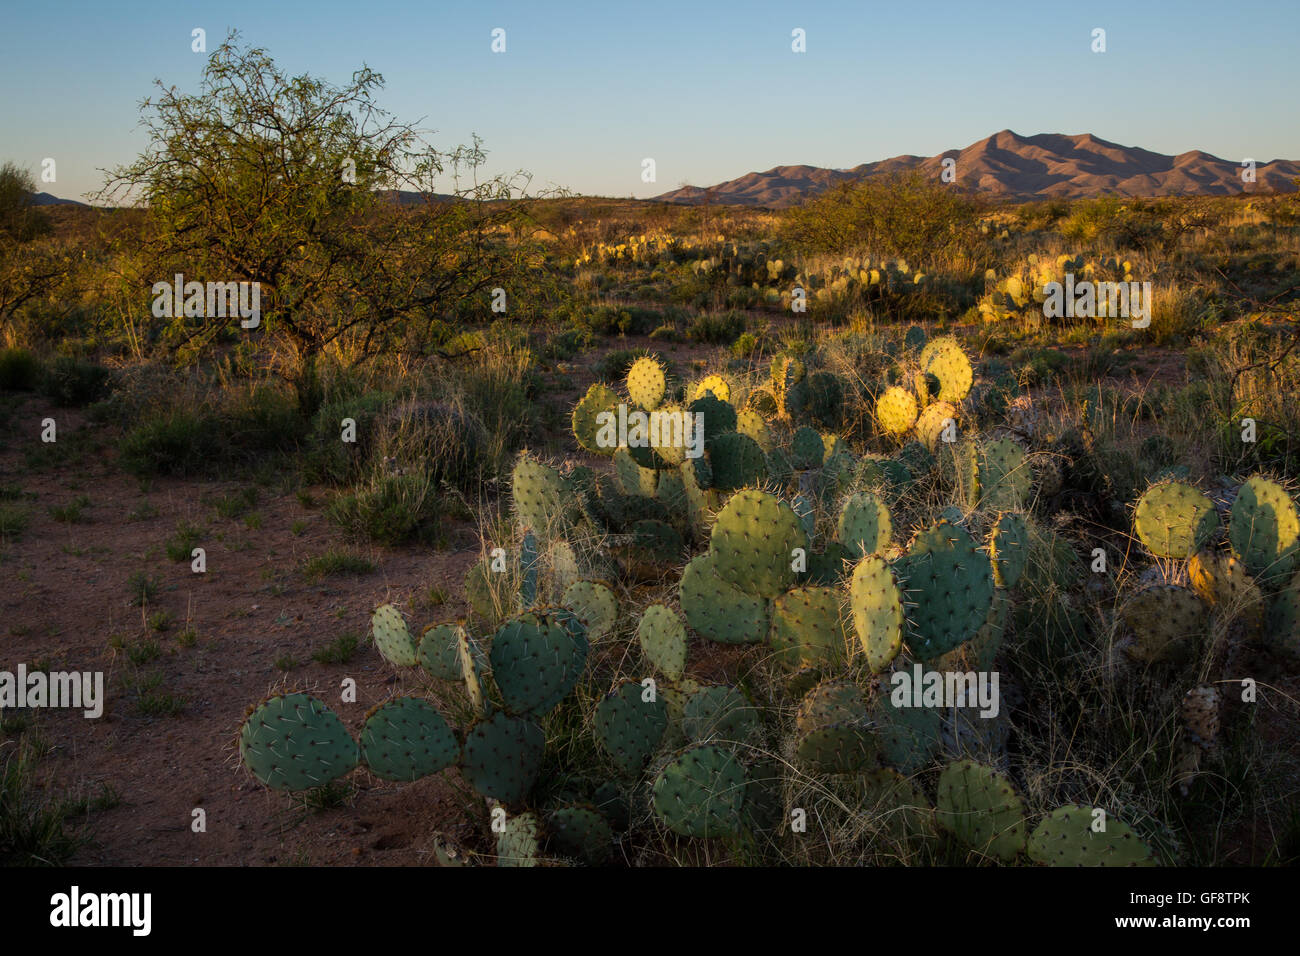 La première lumière du jour, frappant le sol du désert de Sonoran. Las Cienegas National Conservation Area, Arizona Banque D'Images